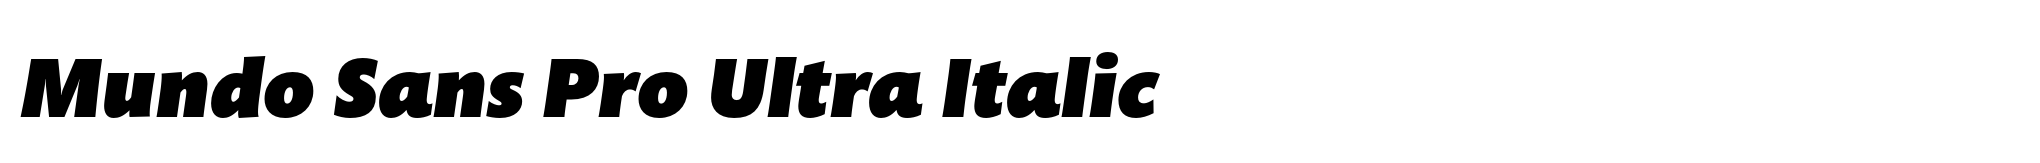 Mundo Sans Pro Ultra Italic image